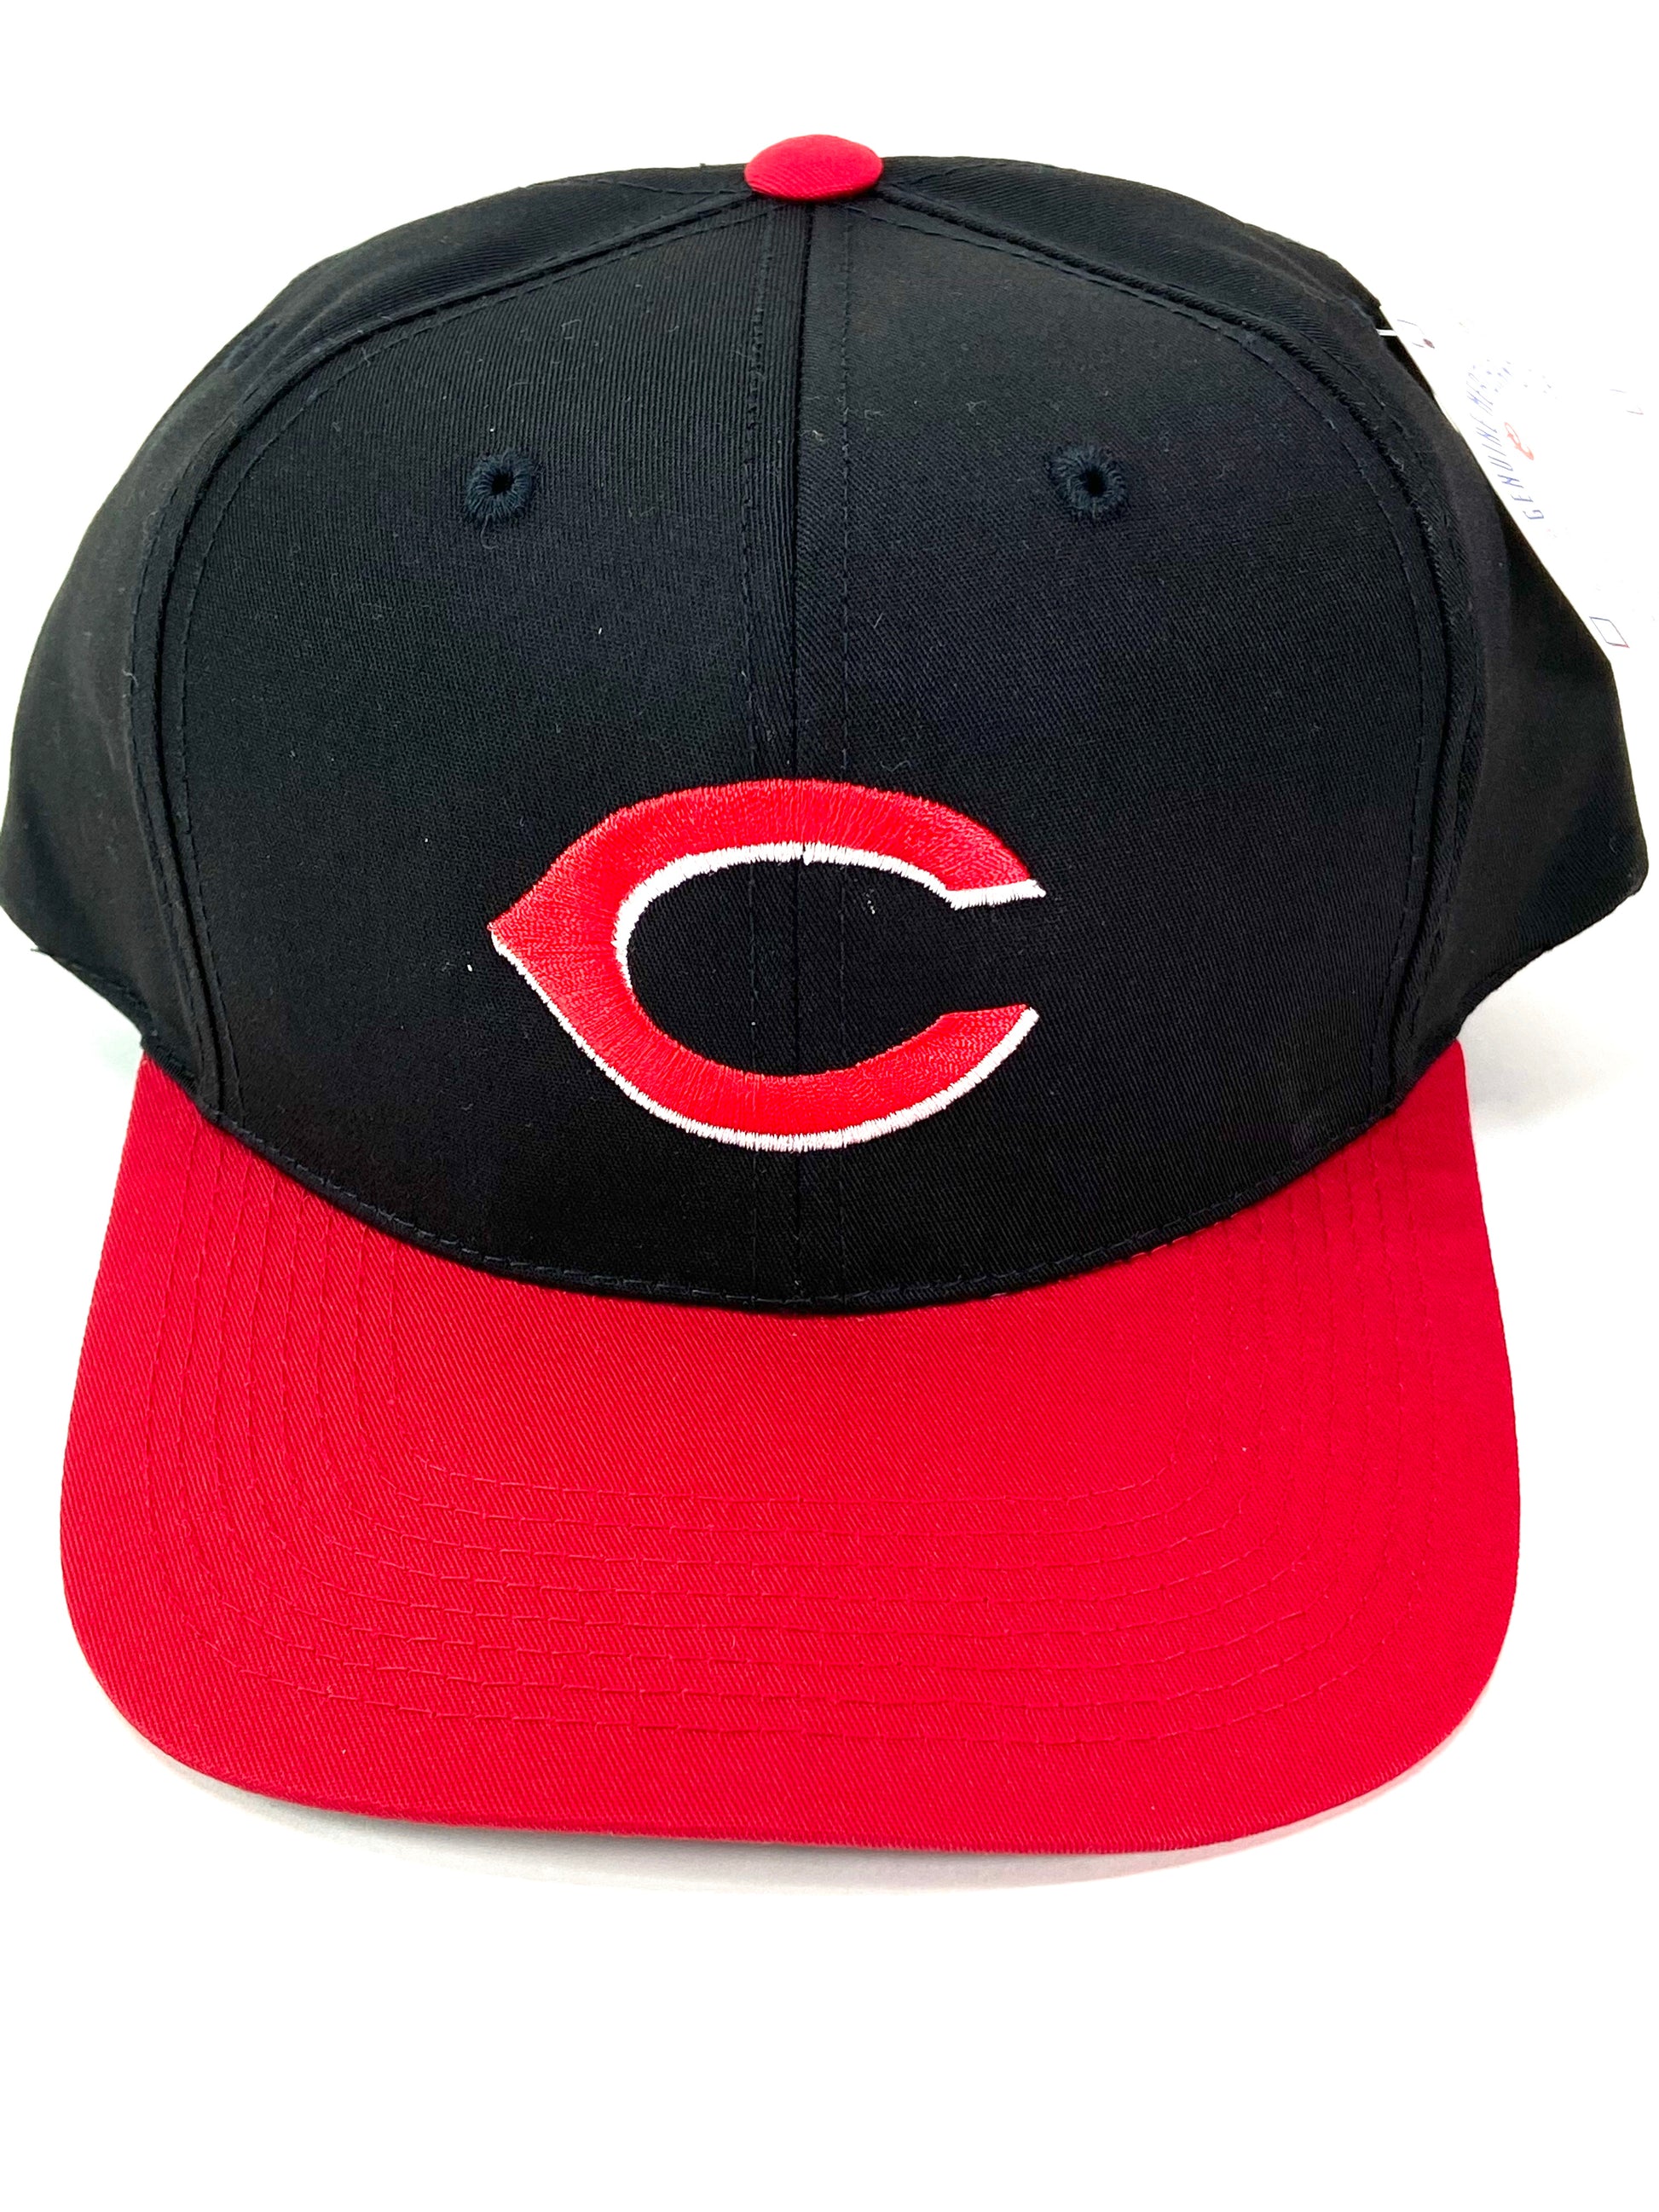 Fan Favorite - MLB Basic Cap, Cincinnati Reds 